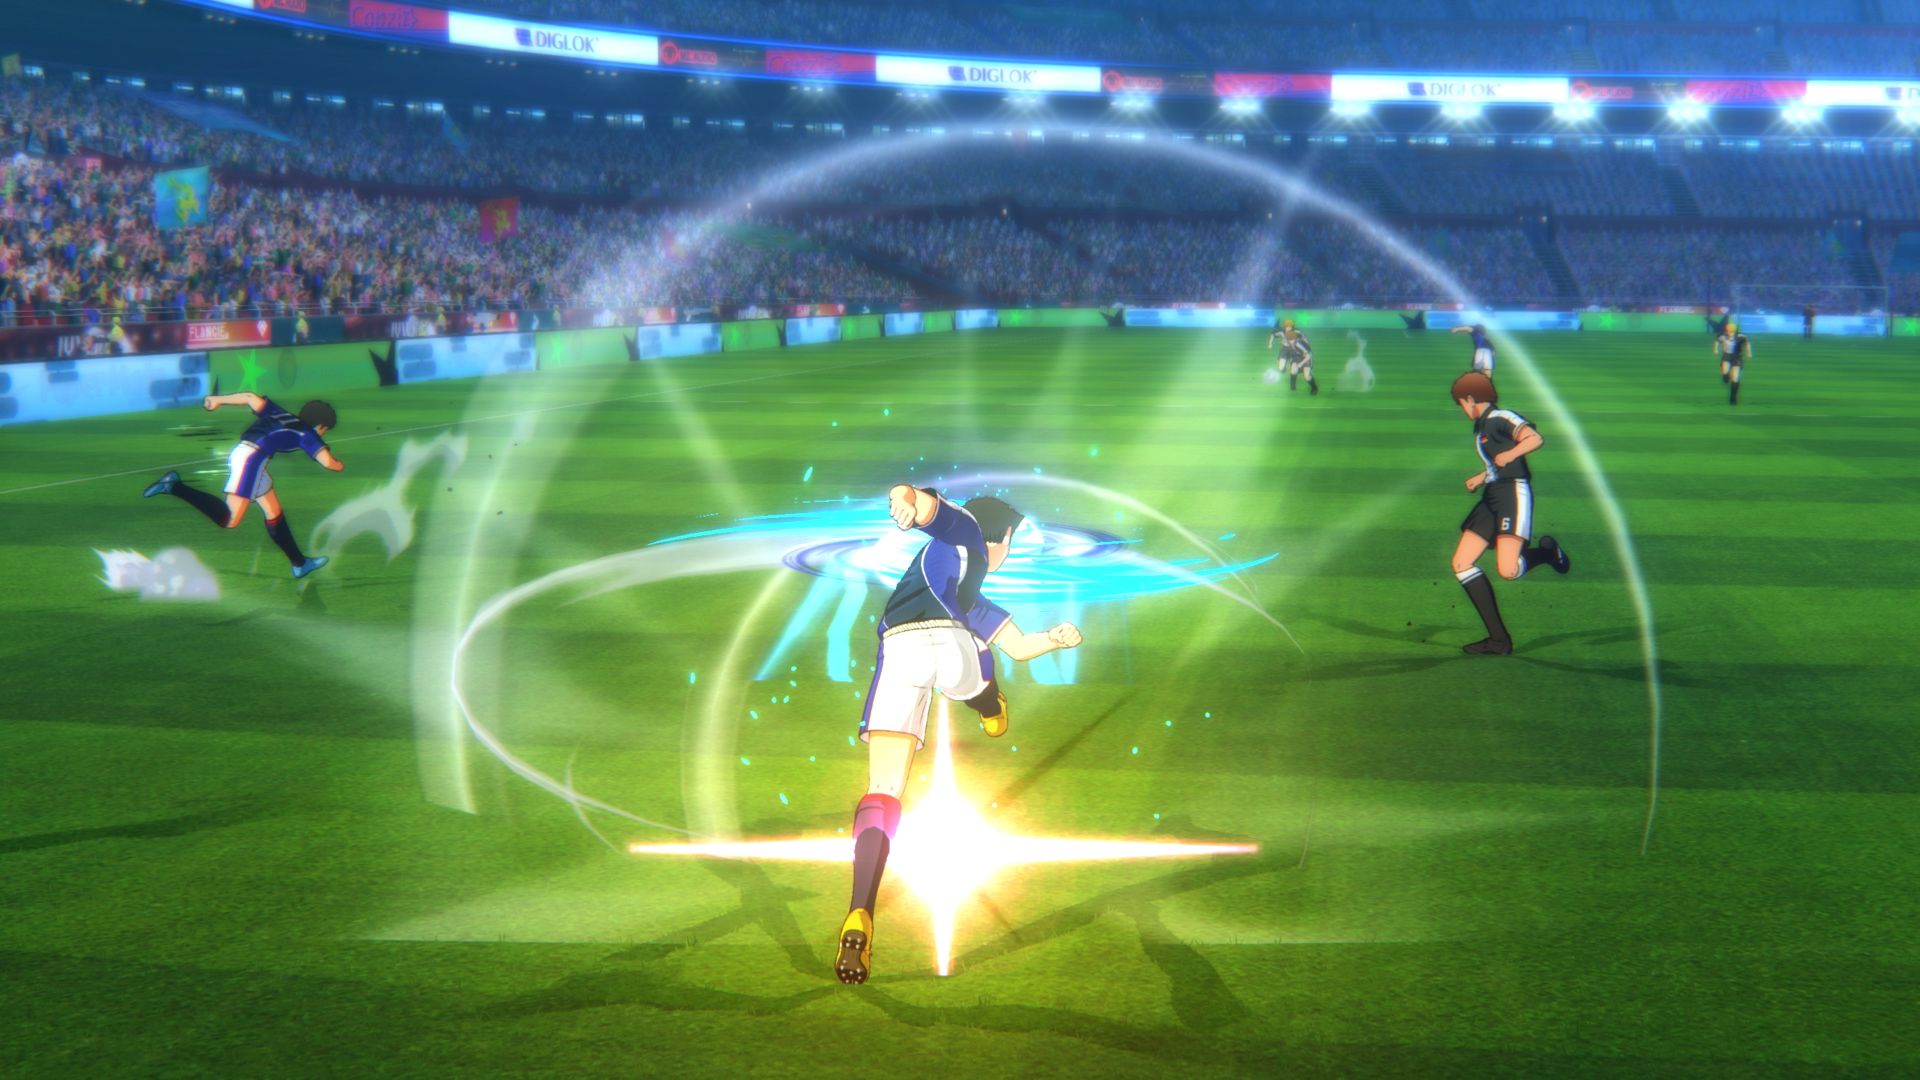 Captain Tsubasa Ace  Game bóng đá trực tuyến chuyển thể thương hiệu Tsubasa  mở thử nghiệm